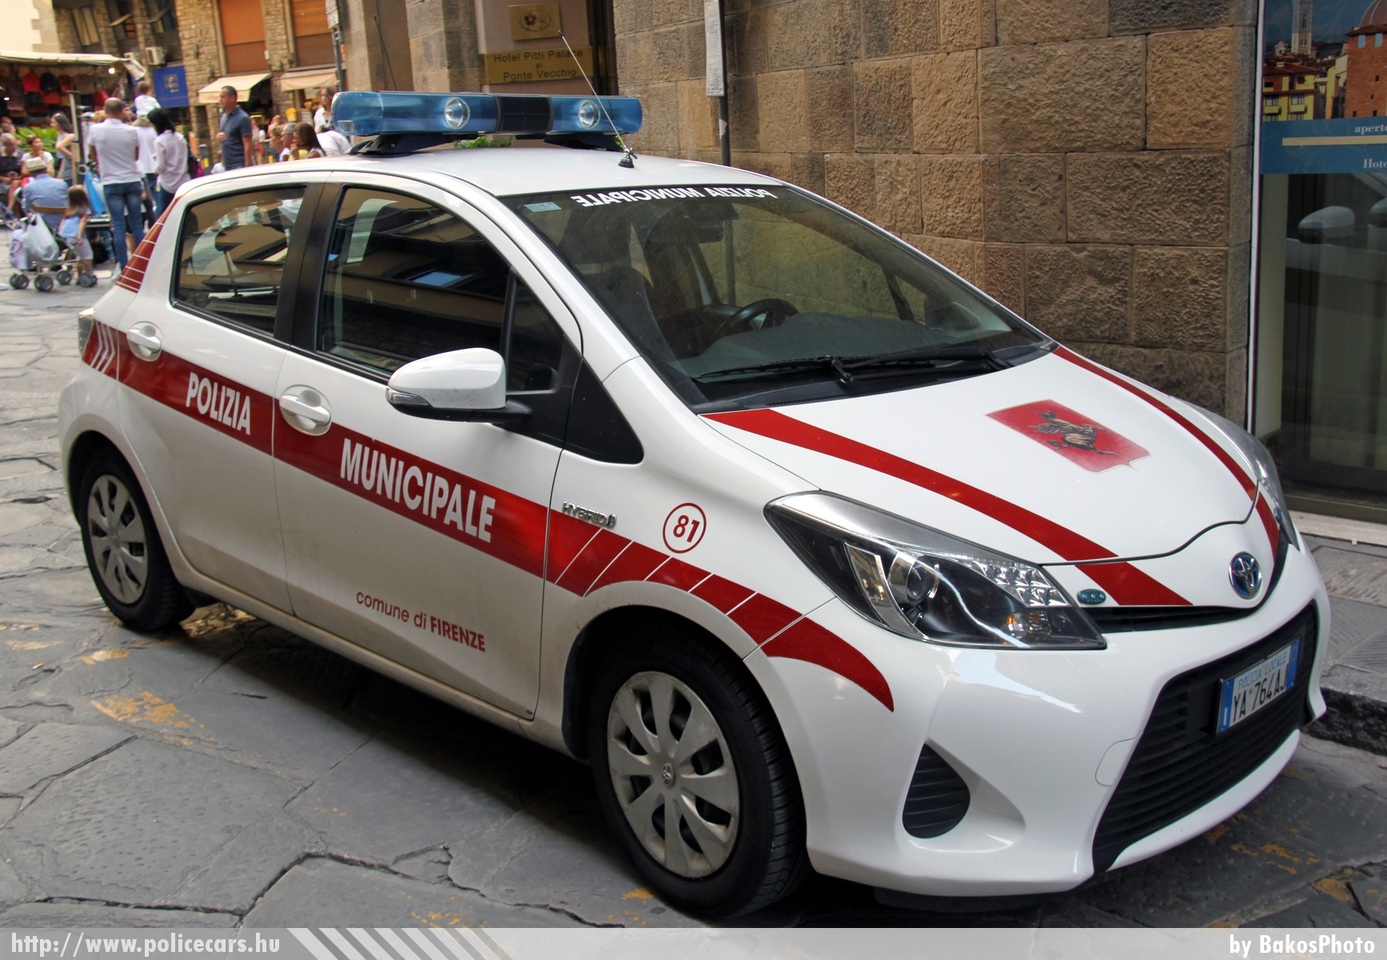 Toyota Yaris, fotó: BakosPhoto
Keywords: rendőr rendőrautó rendőrség olasz Olaszország police policecar Italy italian